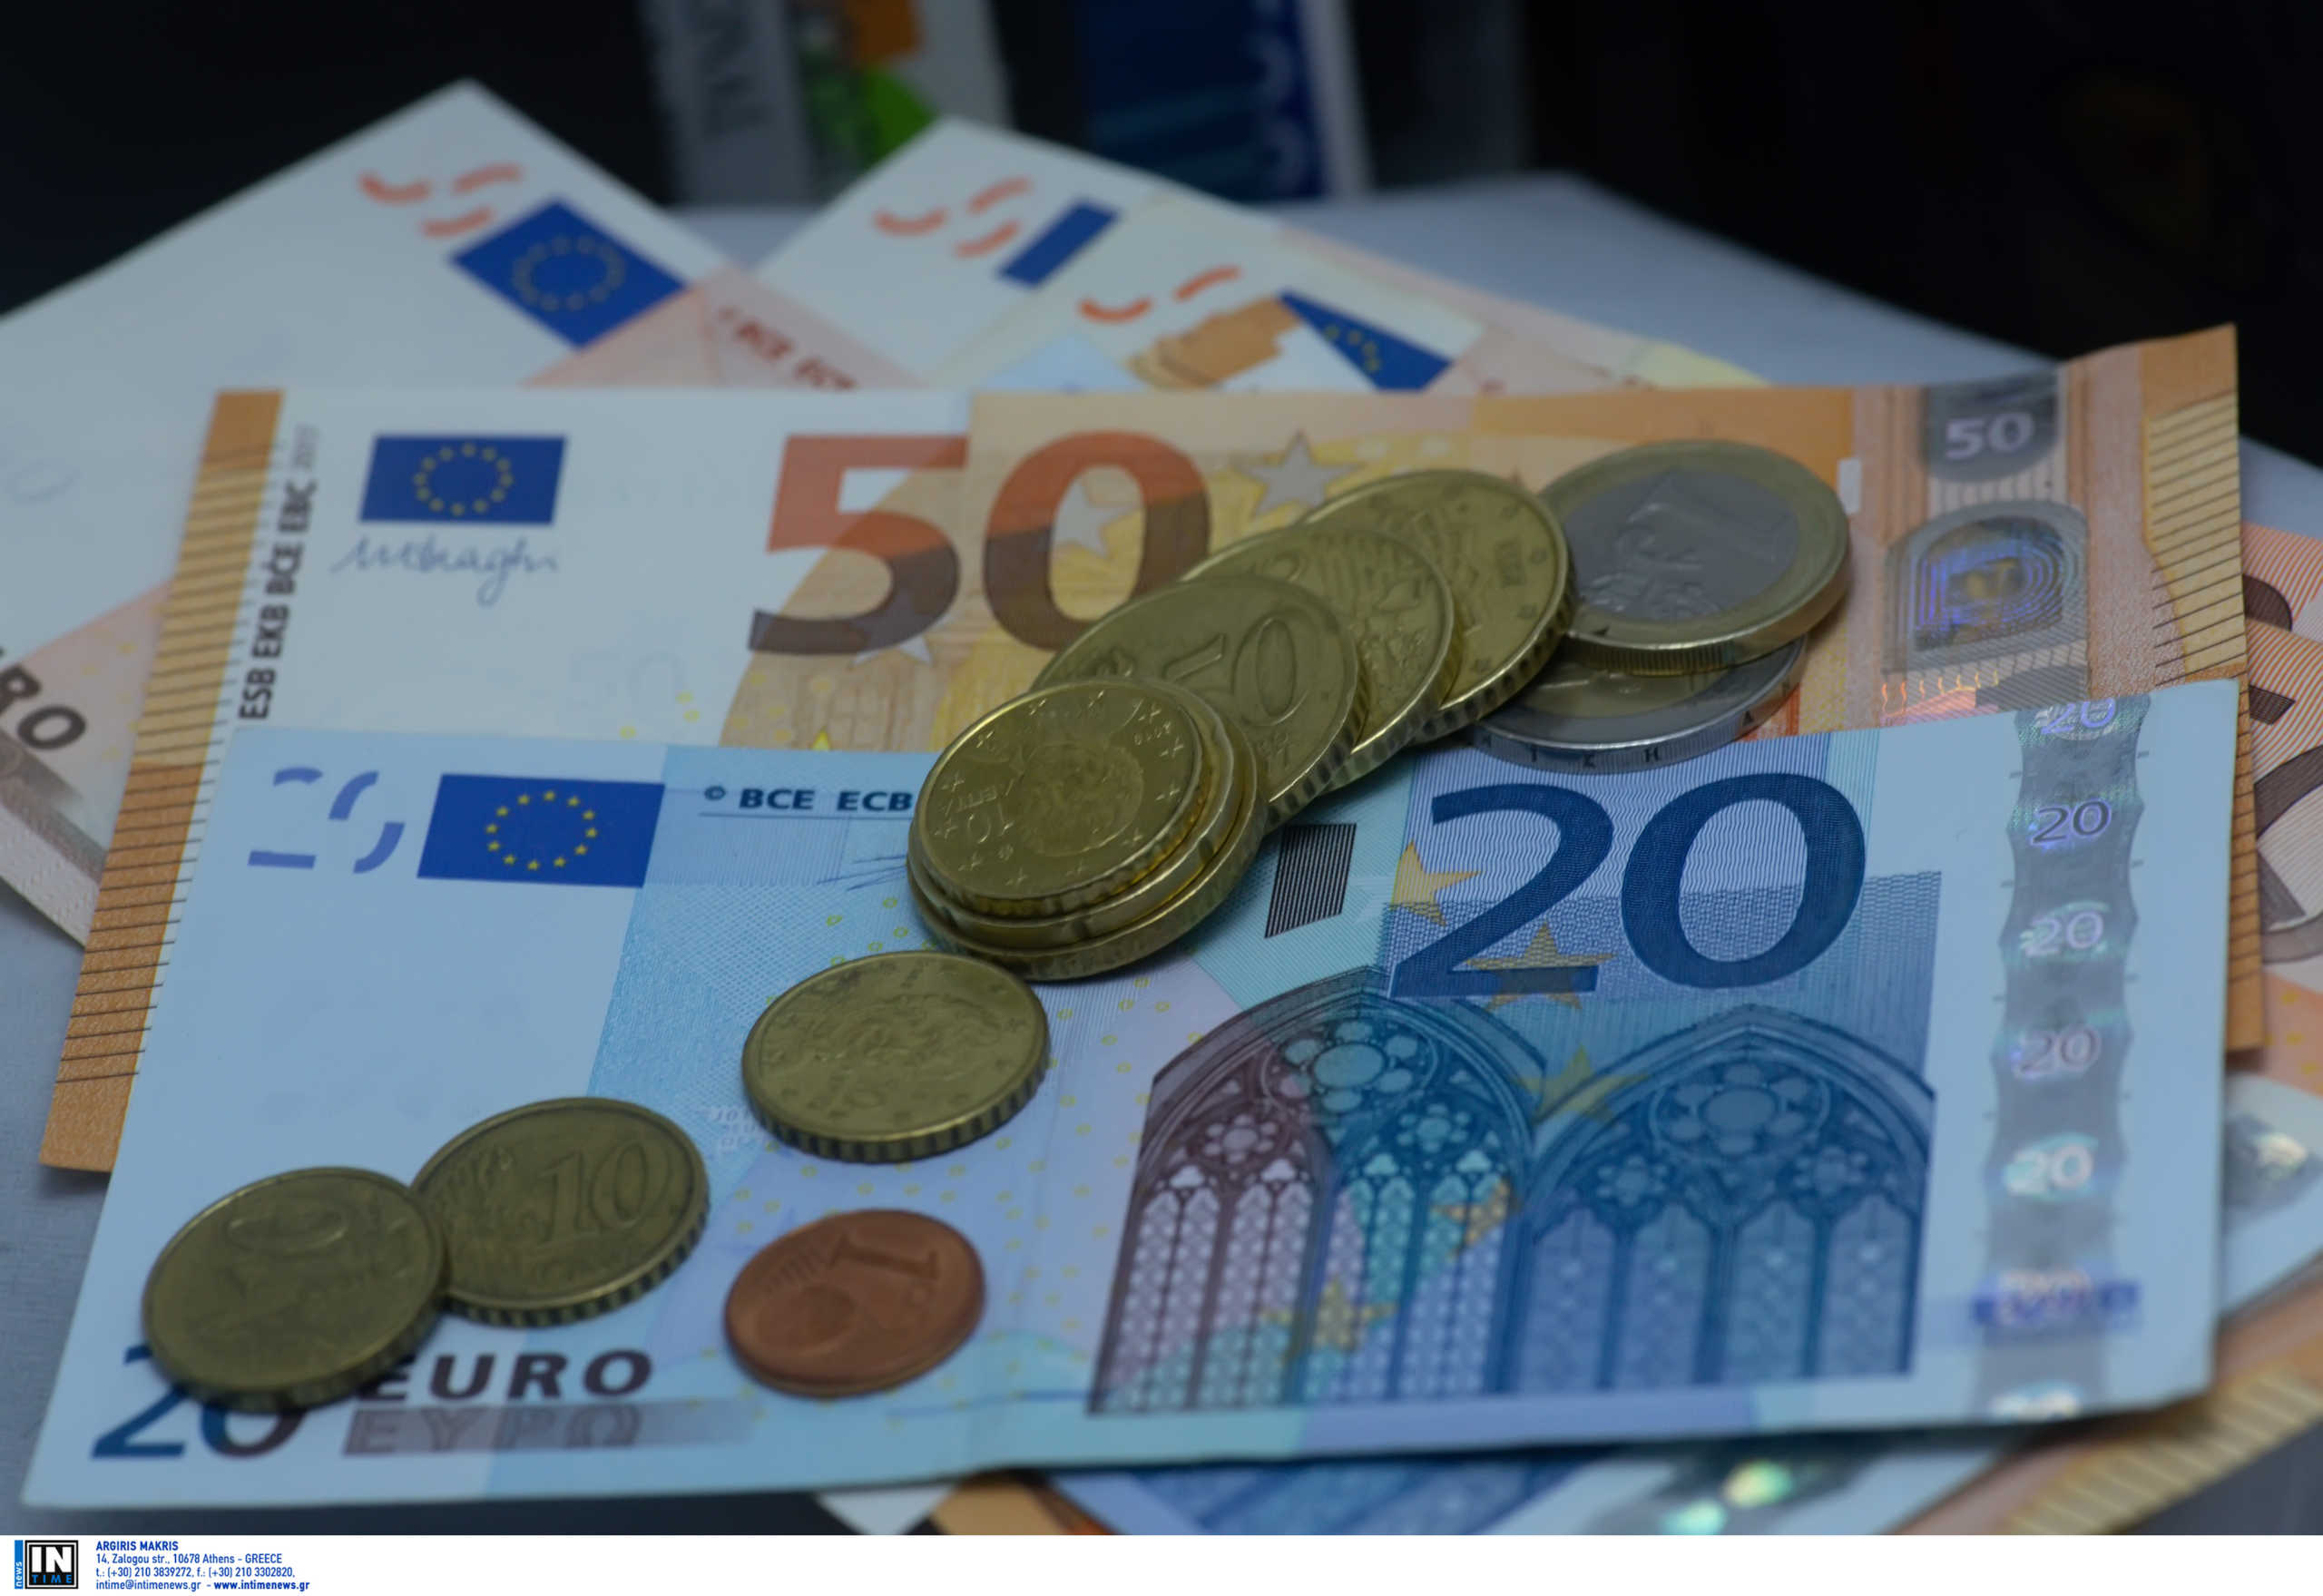 ΕΛΣΤΑΤ: Μειώθηκε το διαθέσιμο εισόδημα των νοικοκυριών κατά 3,3 δισ. ευρώ το 2020